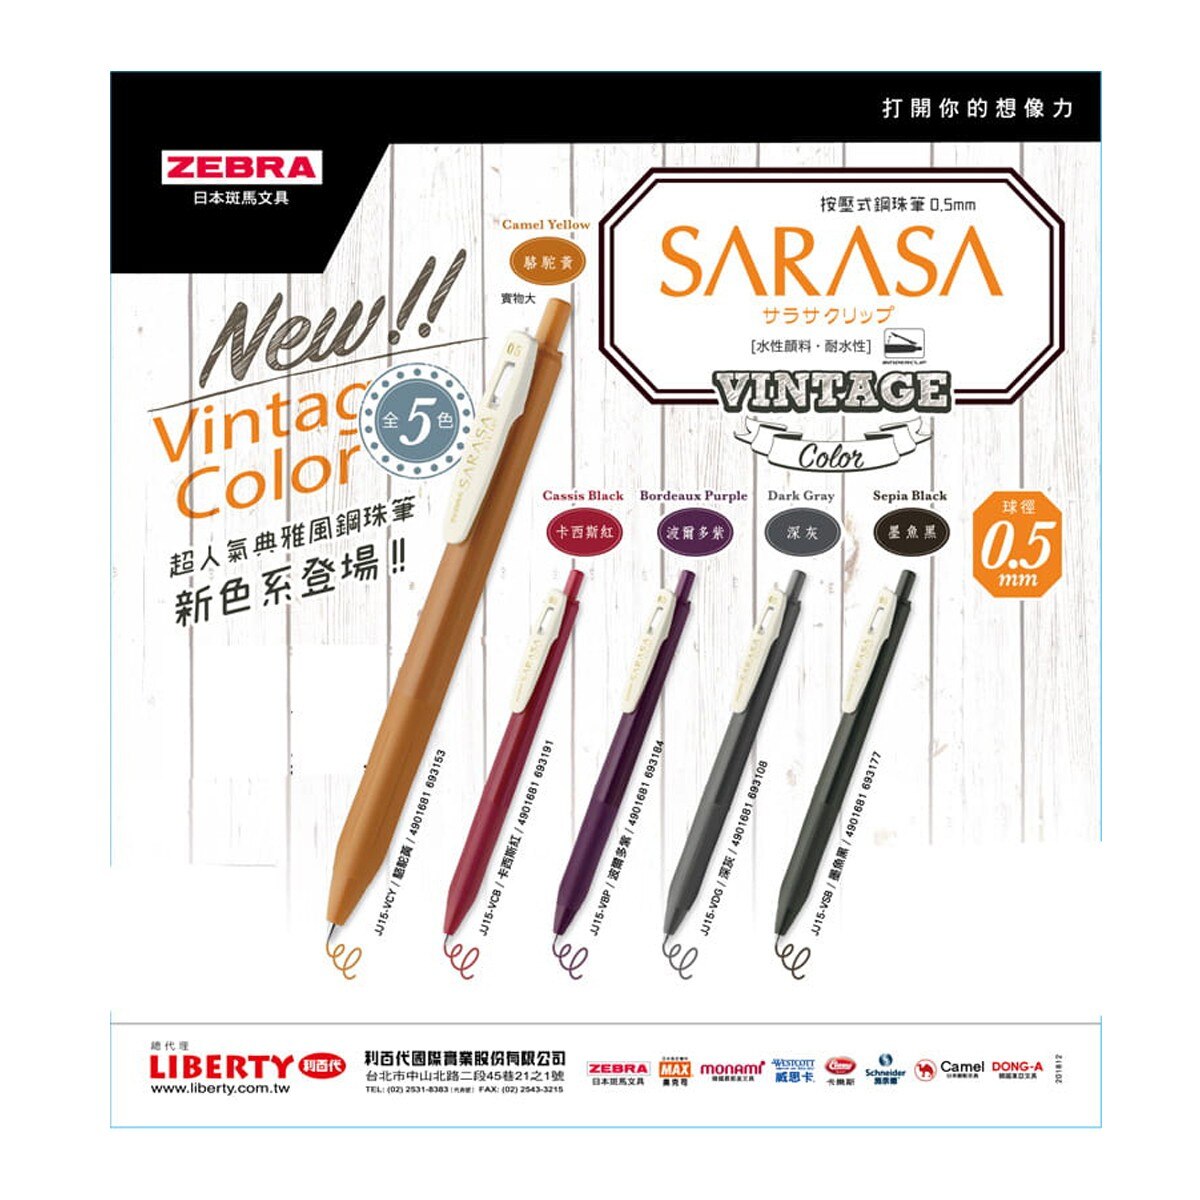 日本斑馬文具 ZEBRA SARASA CLIP 系列按壓式典雅風鋼珠筆0.5mm  第二代(暗灰色、棕黑色、醋栗紅、葡萄紫、焦糖黃) 5色組 4入，顏料系墨水、耐光耐水，環保商品橡膠握把，多功能筆夾，書寫出成熟氣質的風味。